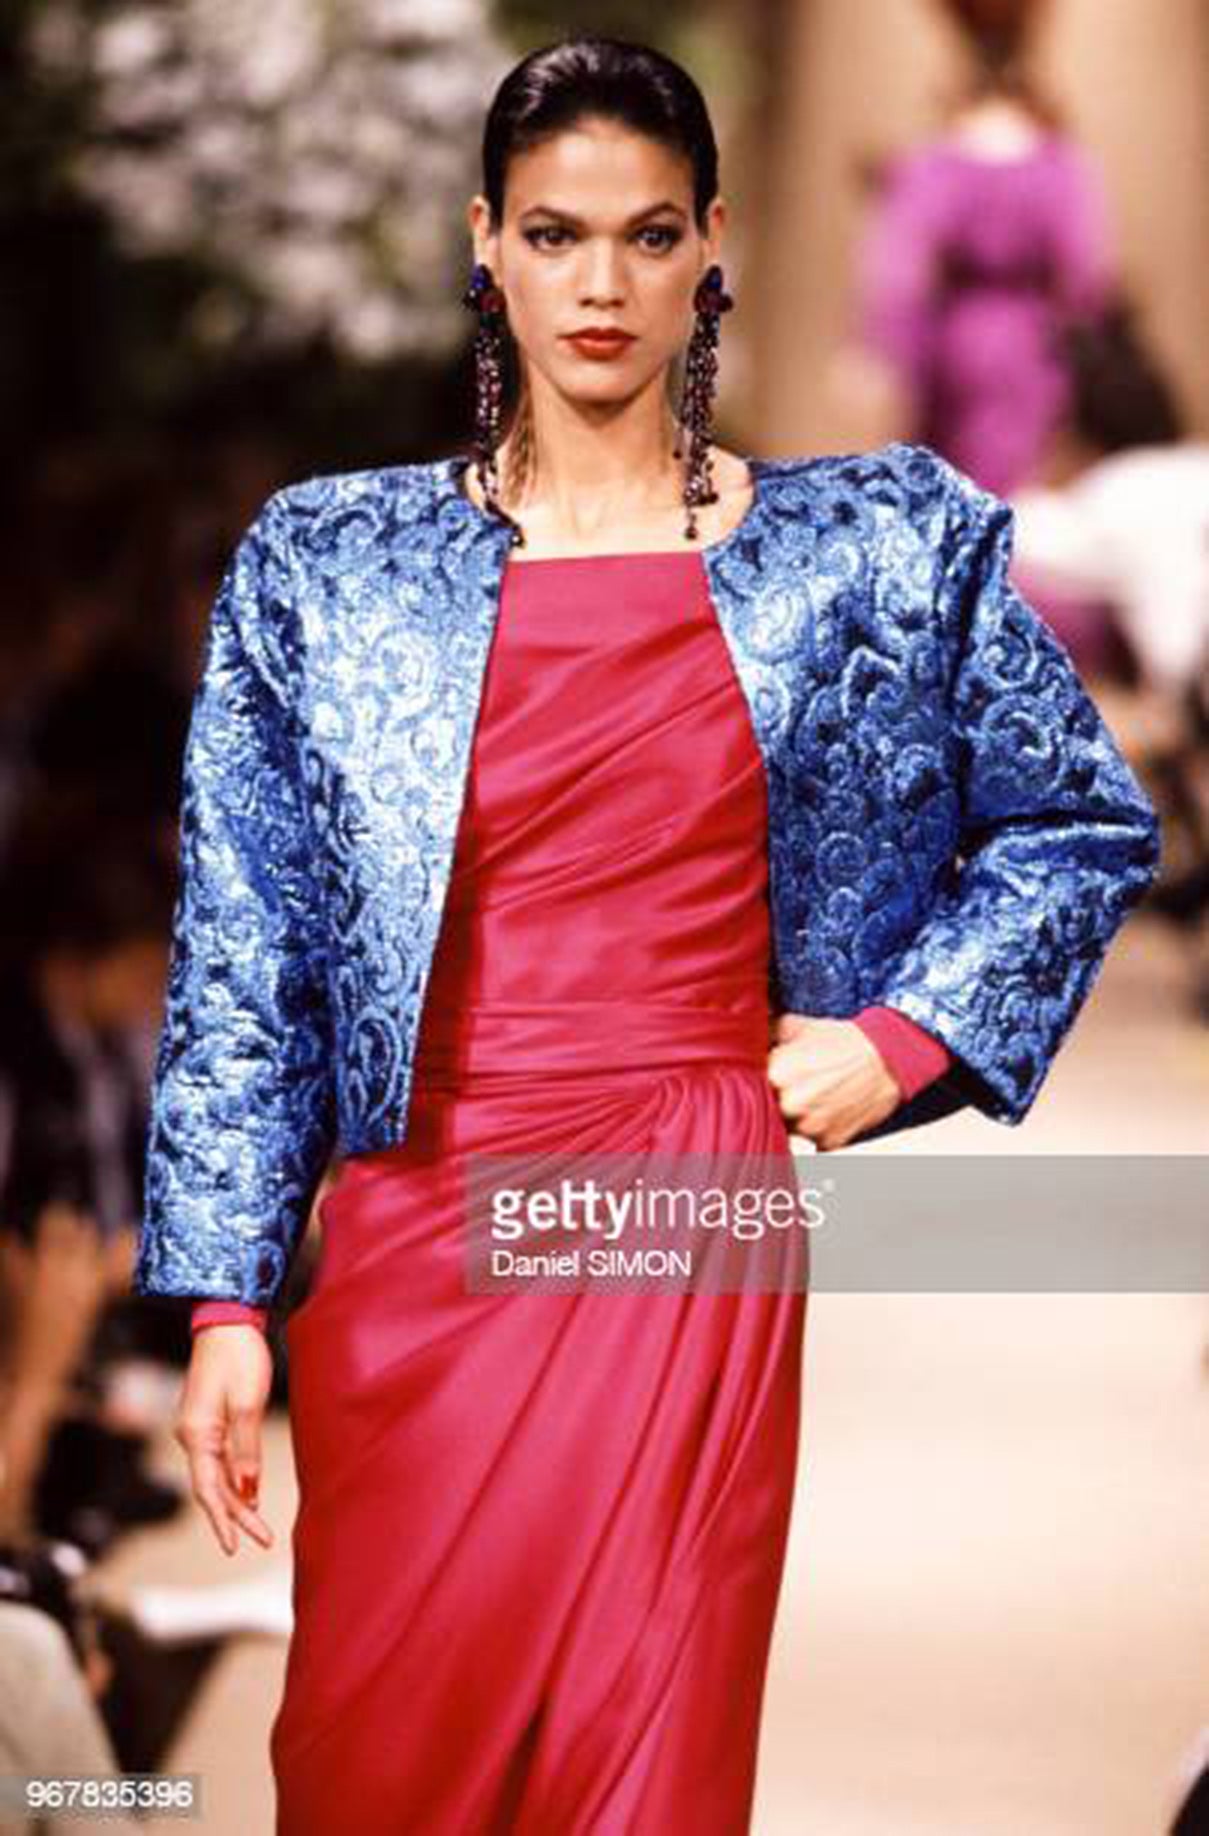 Une robe documentée de haute couture d'Yves Saint Laurent, absolument magnifique et incroyablement rare, issue de sa collection emblématique automne/hiver 1989-90. Il est incroyablement chic grâce à sa construction fluide drapée à la main. Le tissu